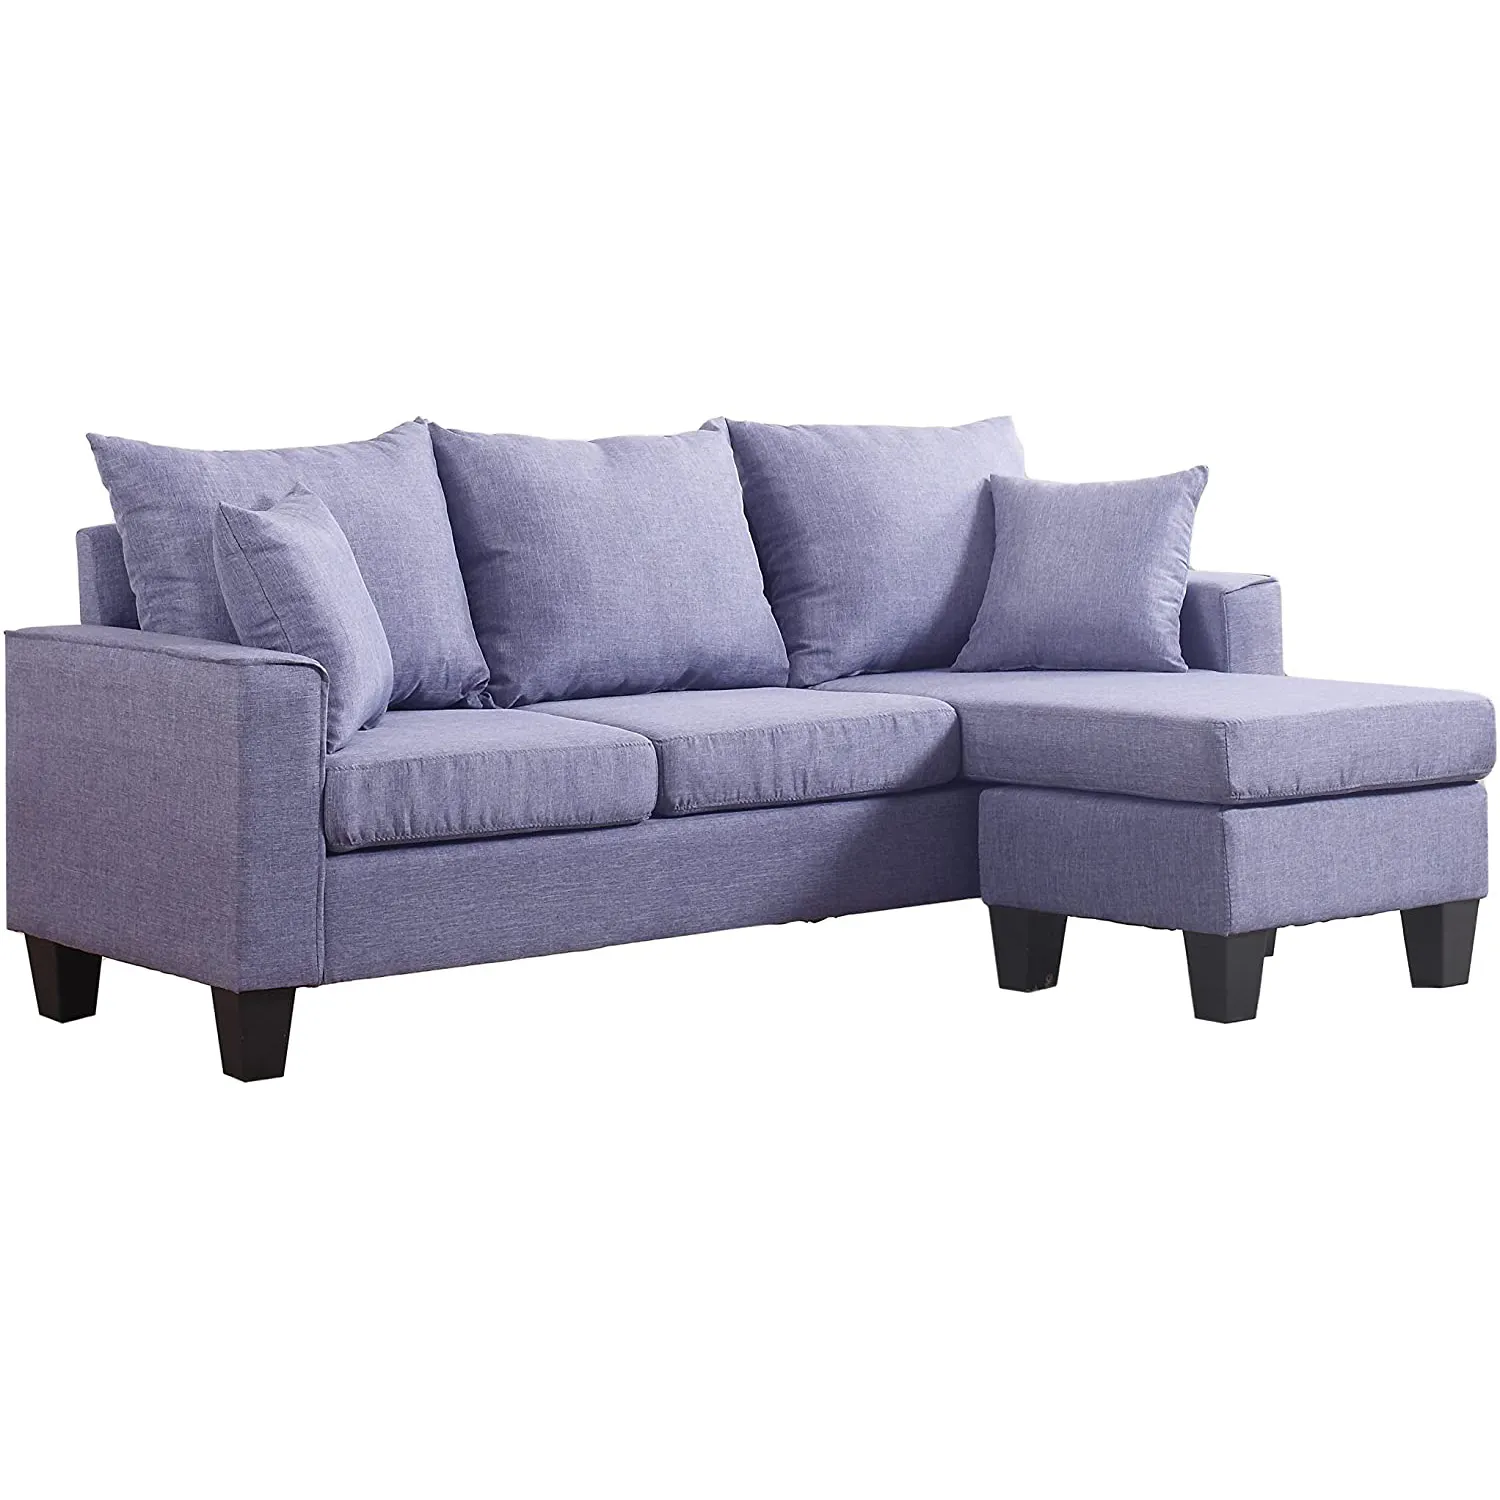 Элегантный фиолетовый бархатный диван, удобный l-образный диван с подлокотником, дешевый высококачественный угловой диван